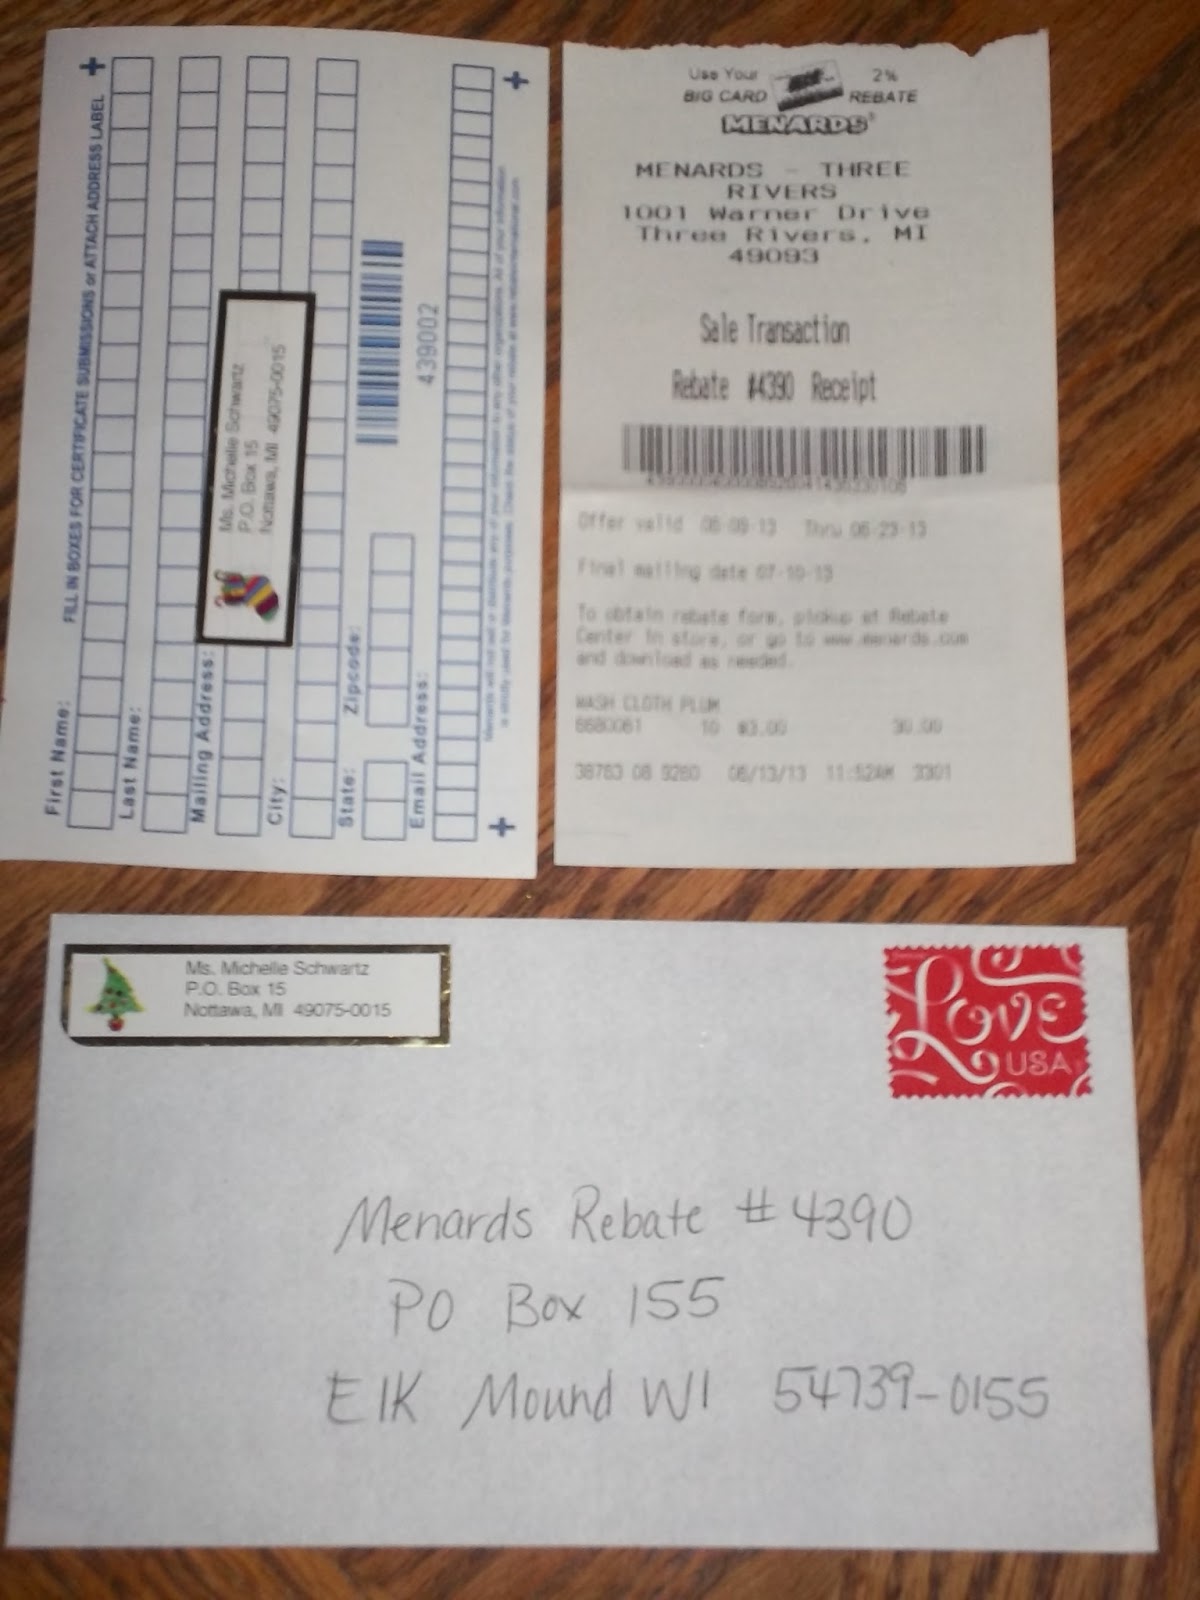 Menards Rebate Mailing Address